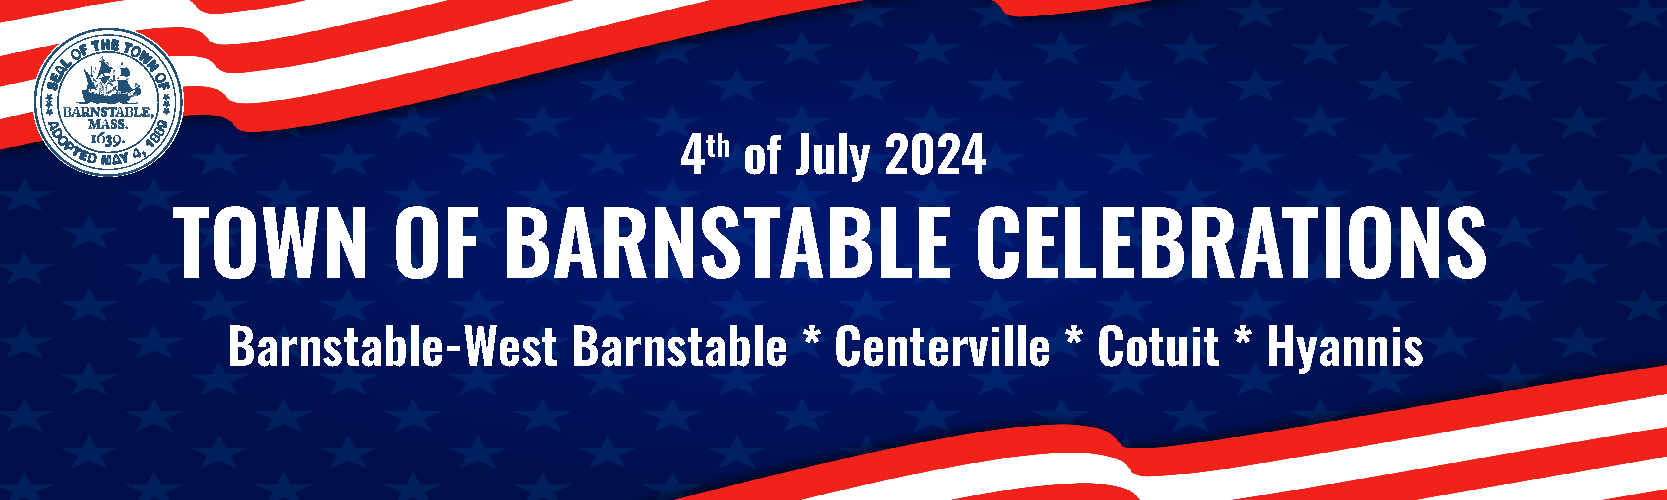 2024 July 4th celebration banner